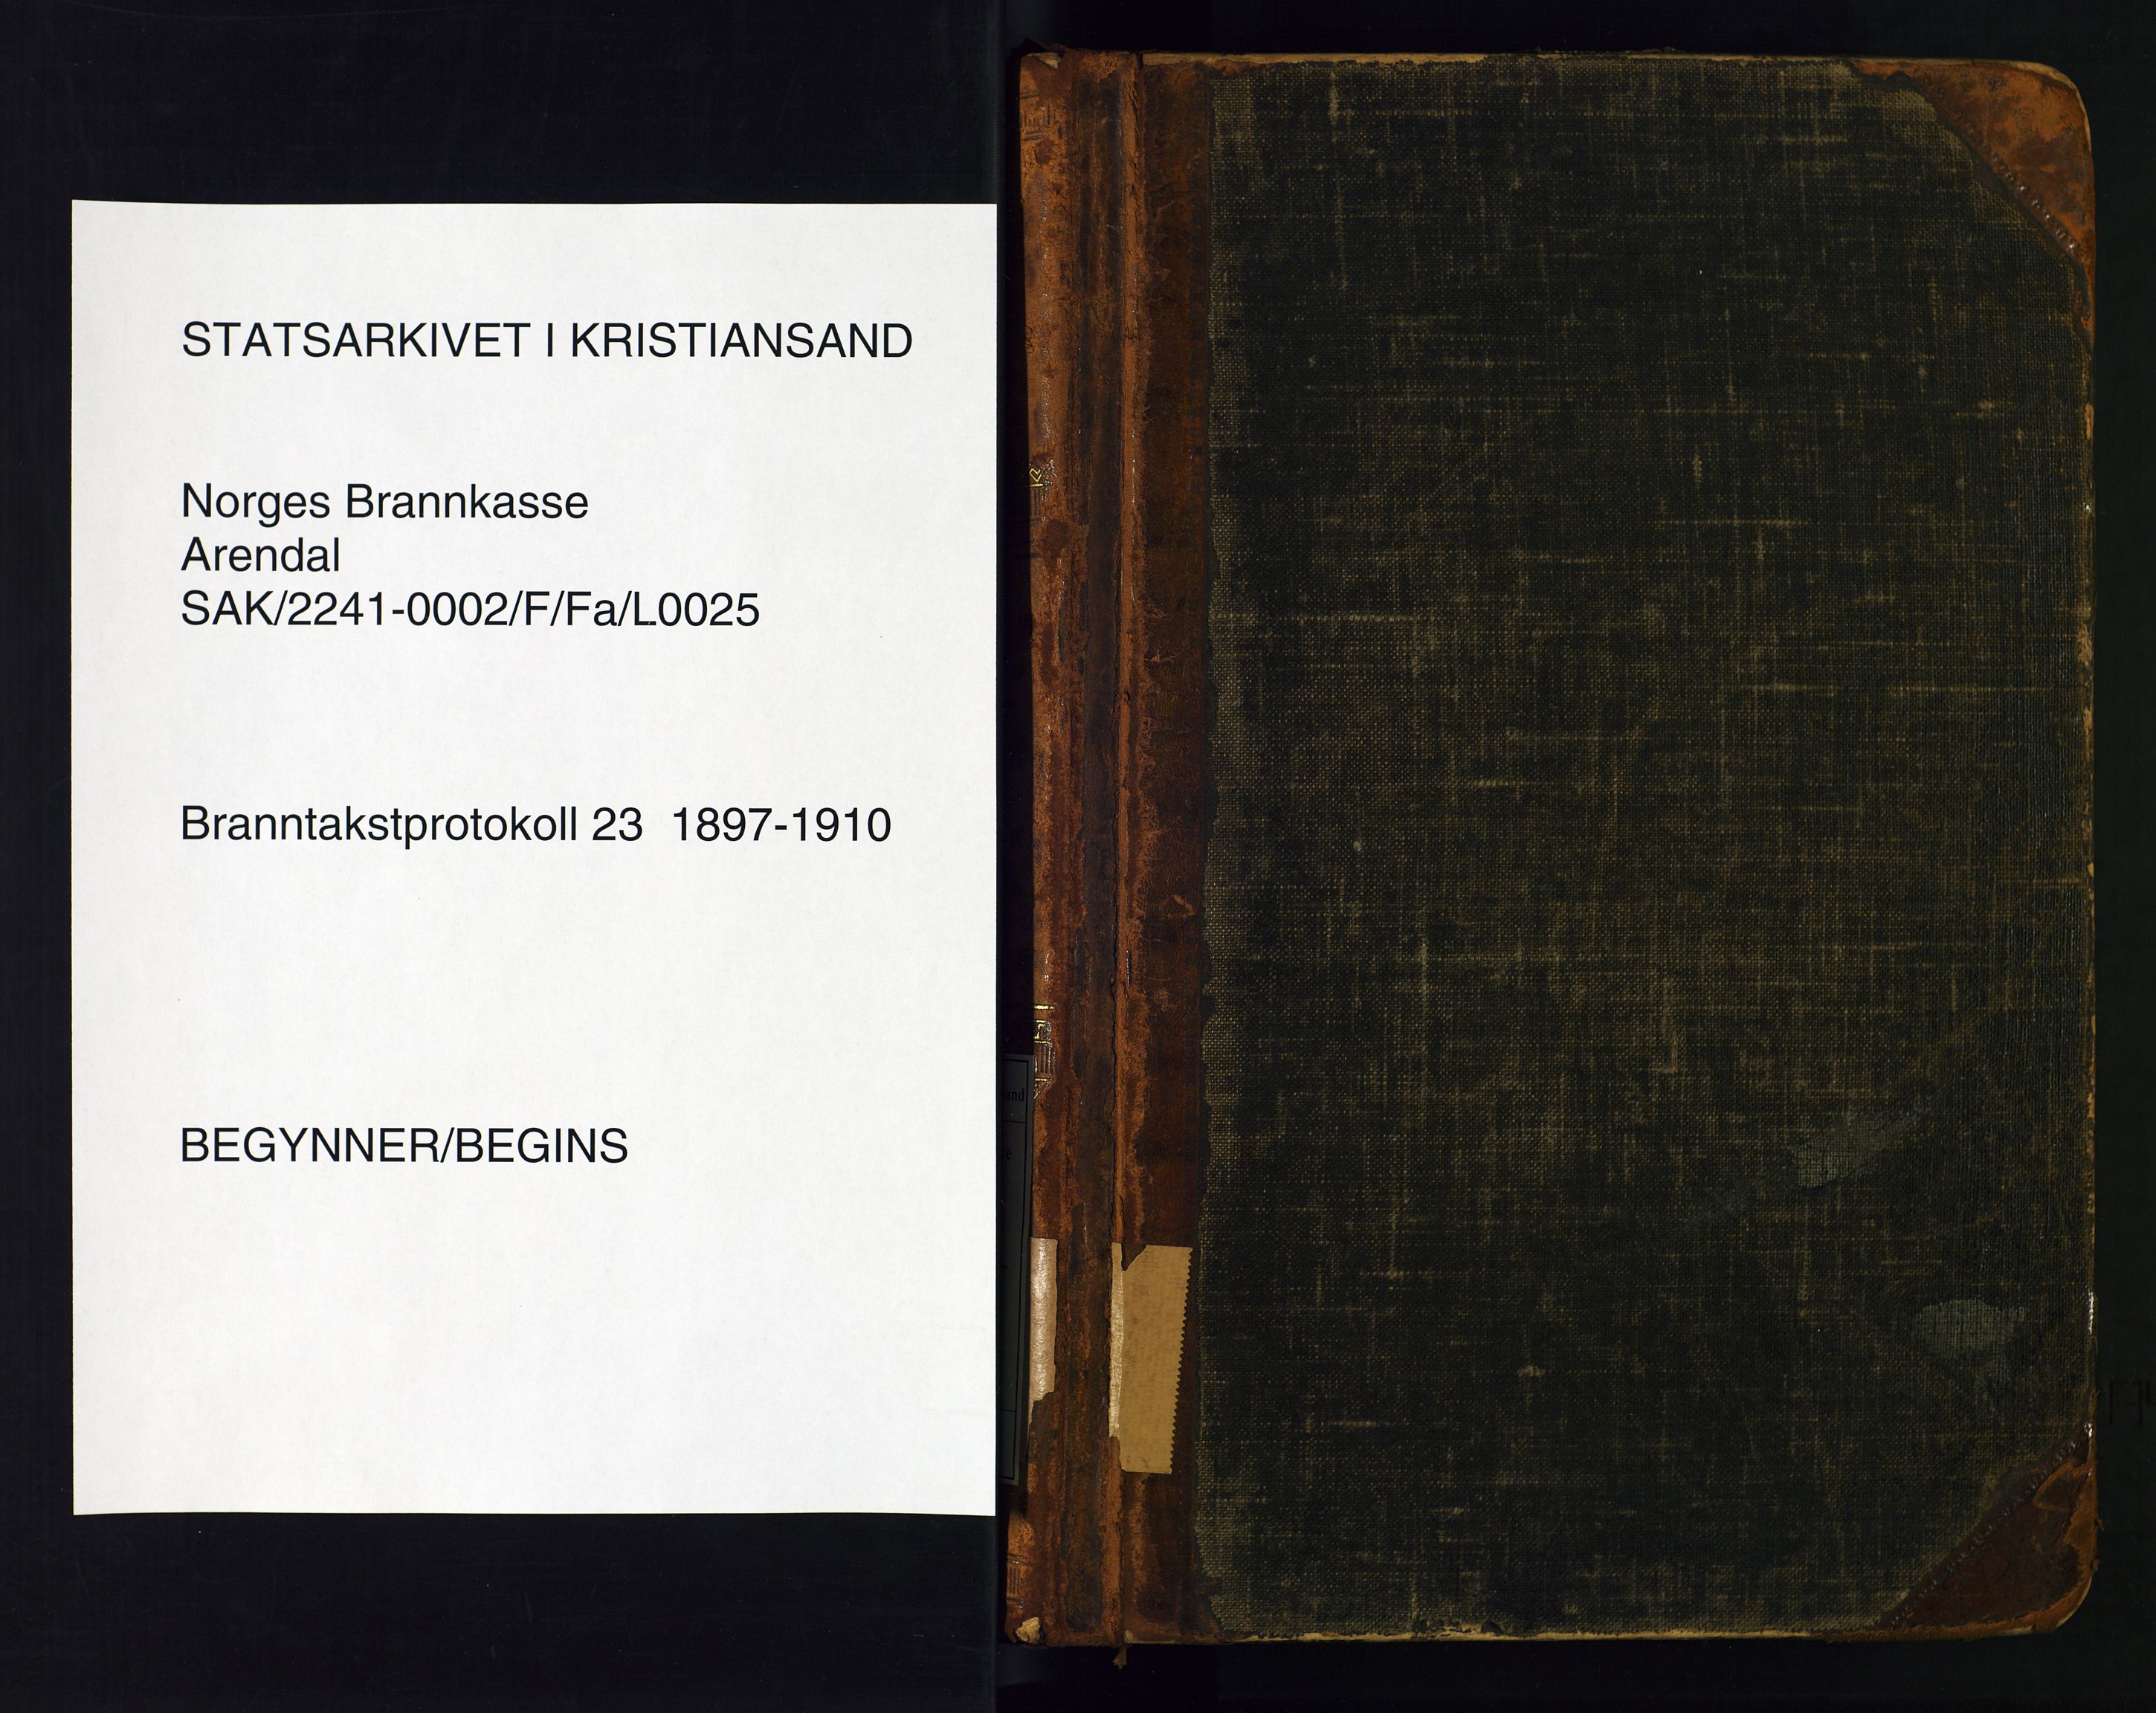 Norges Brannkasse Arendal, SAK/2241-0002/F/Fa/L0025: Branntakstprotokoll nr. 23 for Arendal og Barbu med matrikkelnummerregister, 1897-1910